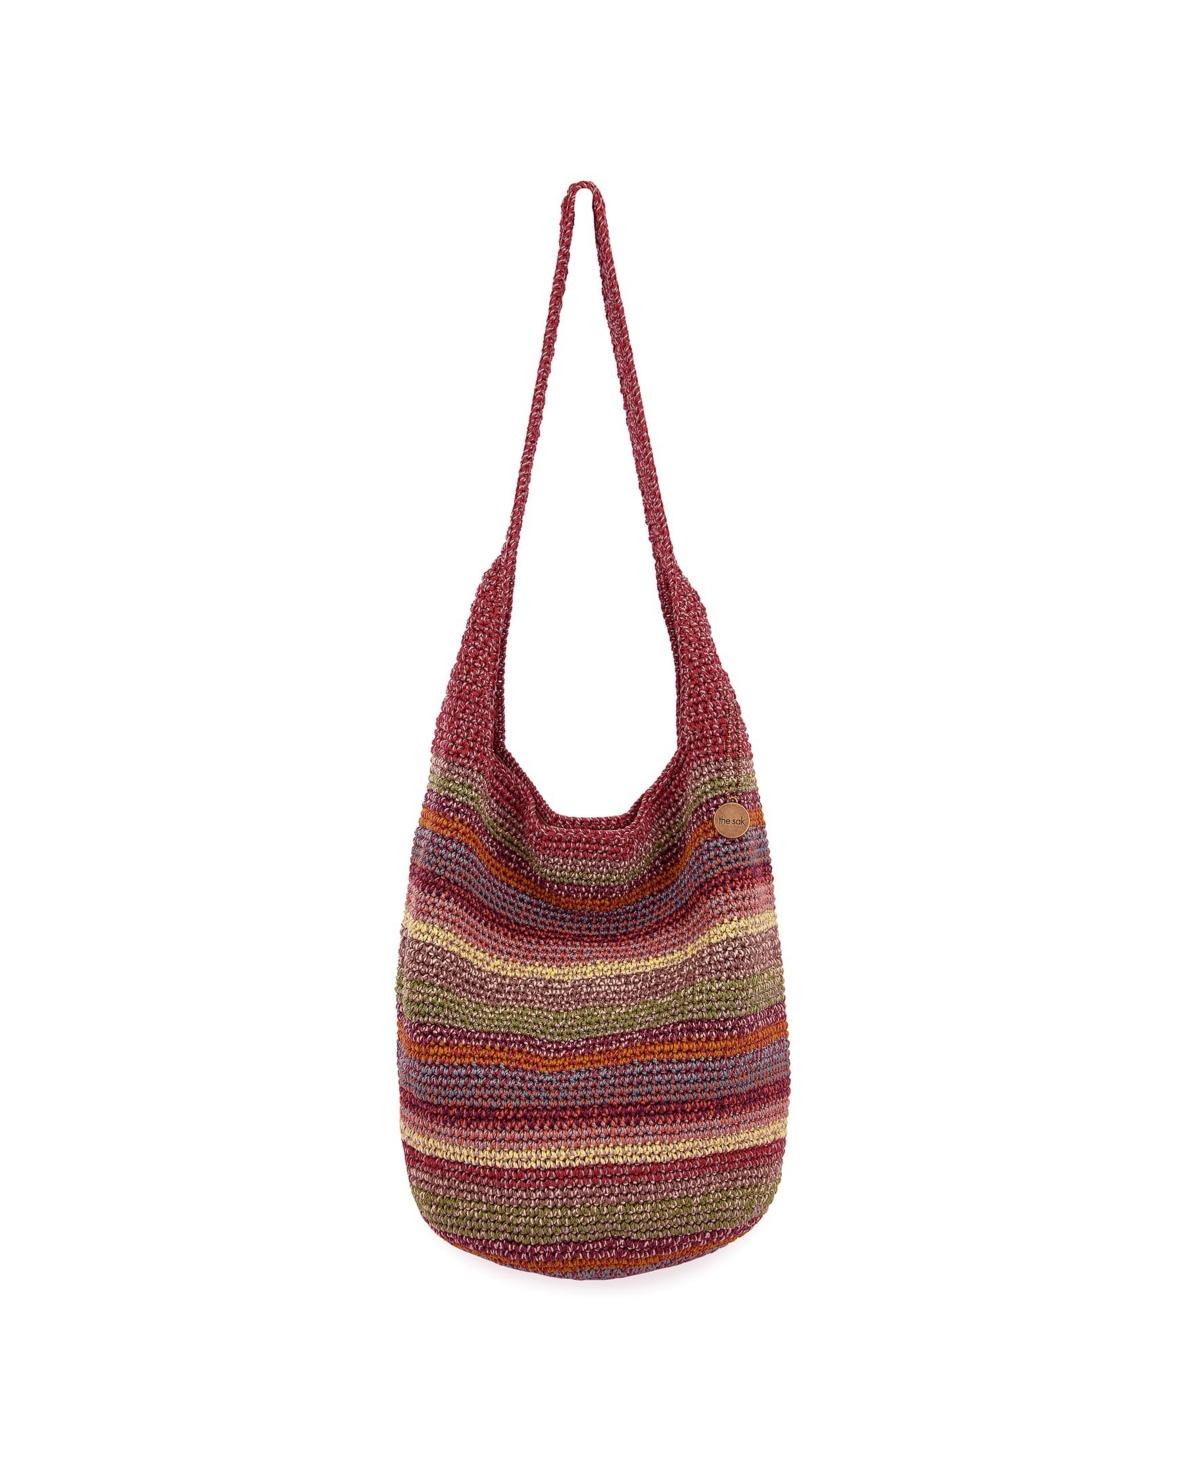 120 Crochet Medium Hobo - Sunset Stripe